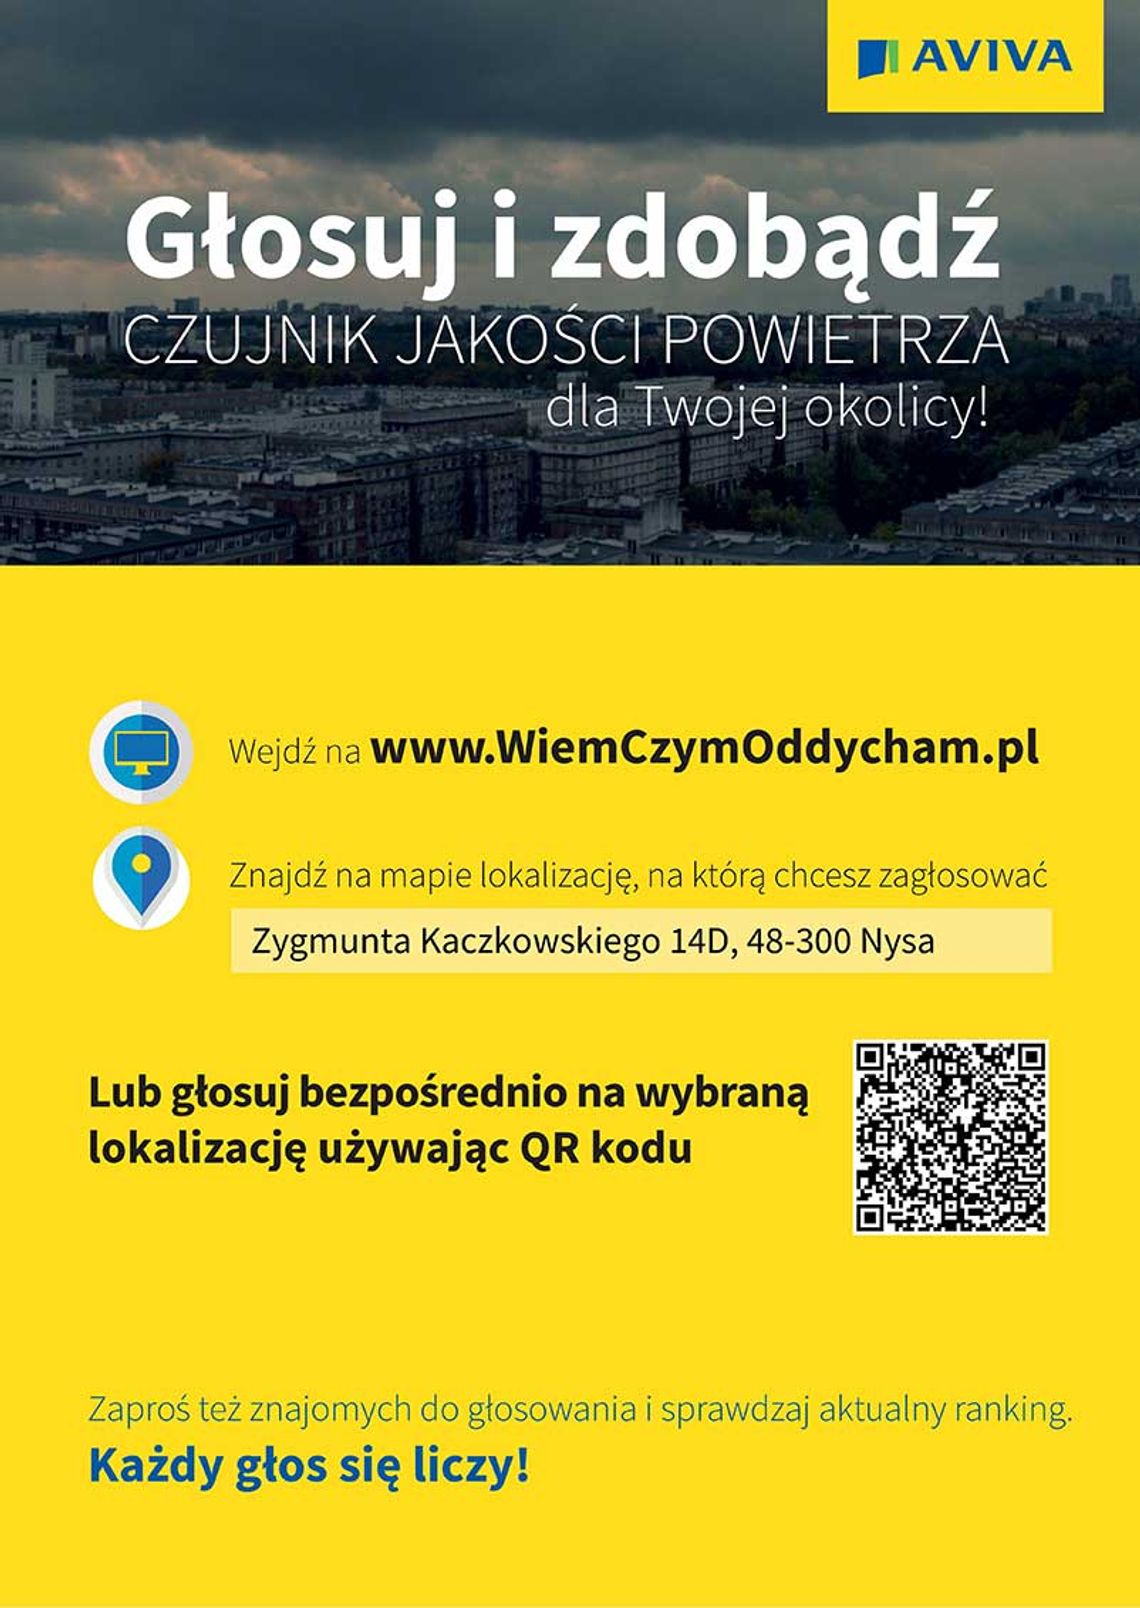 Głosuj na Nysę - do zdobycia czujniki jakości powietrza. - WiemCzymOddycham.pl